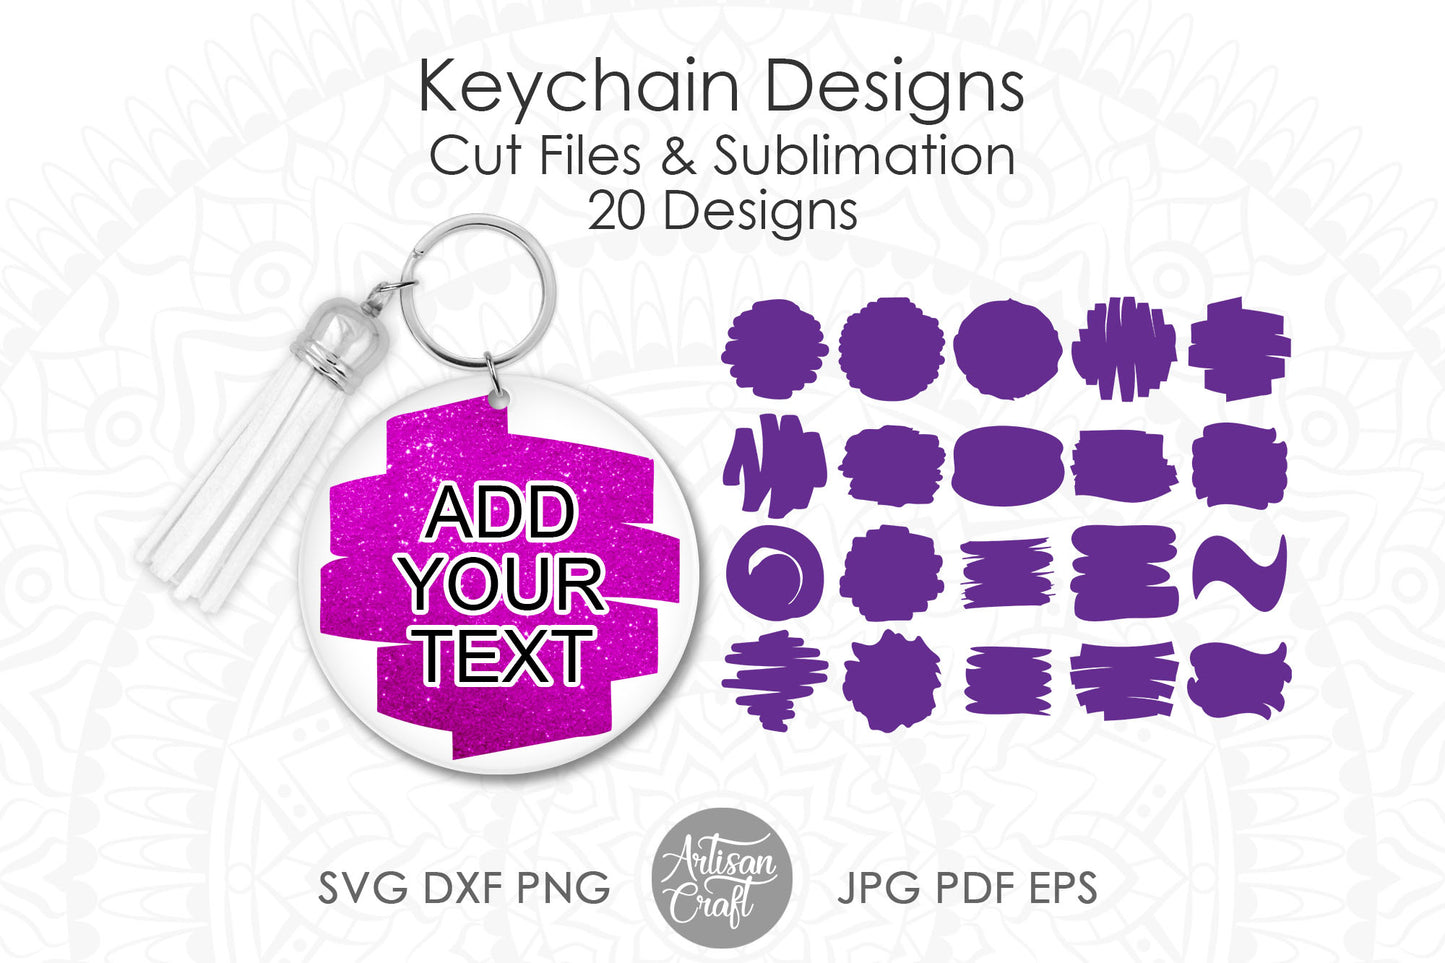 Brush stroke SVG for keychain